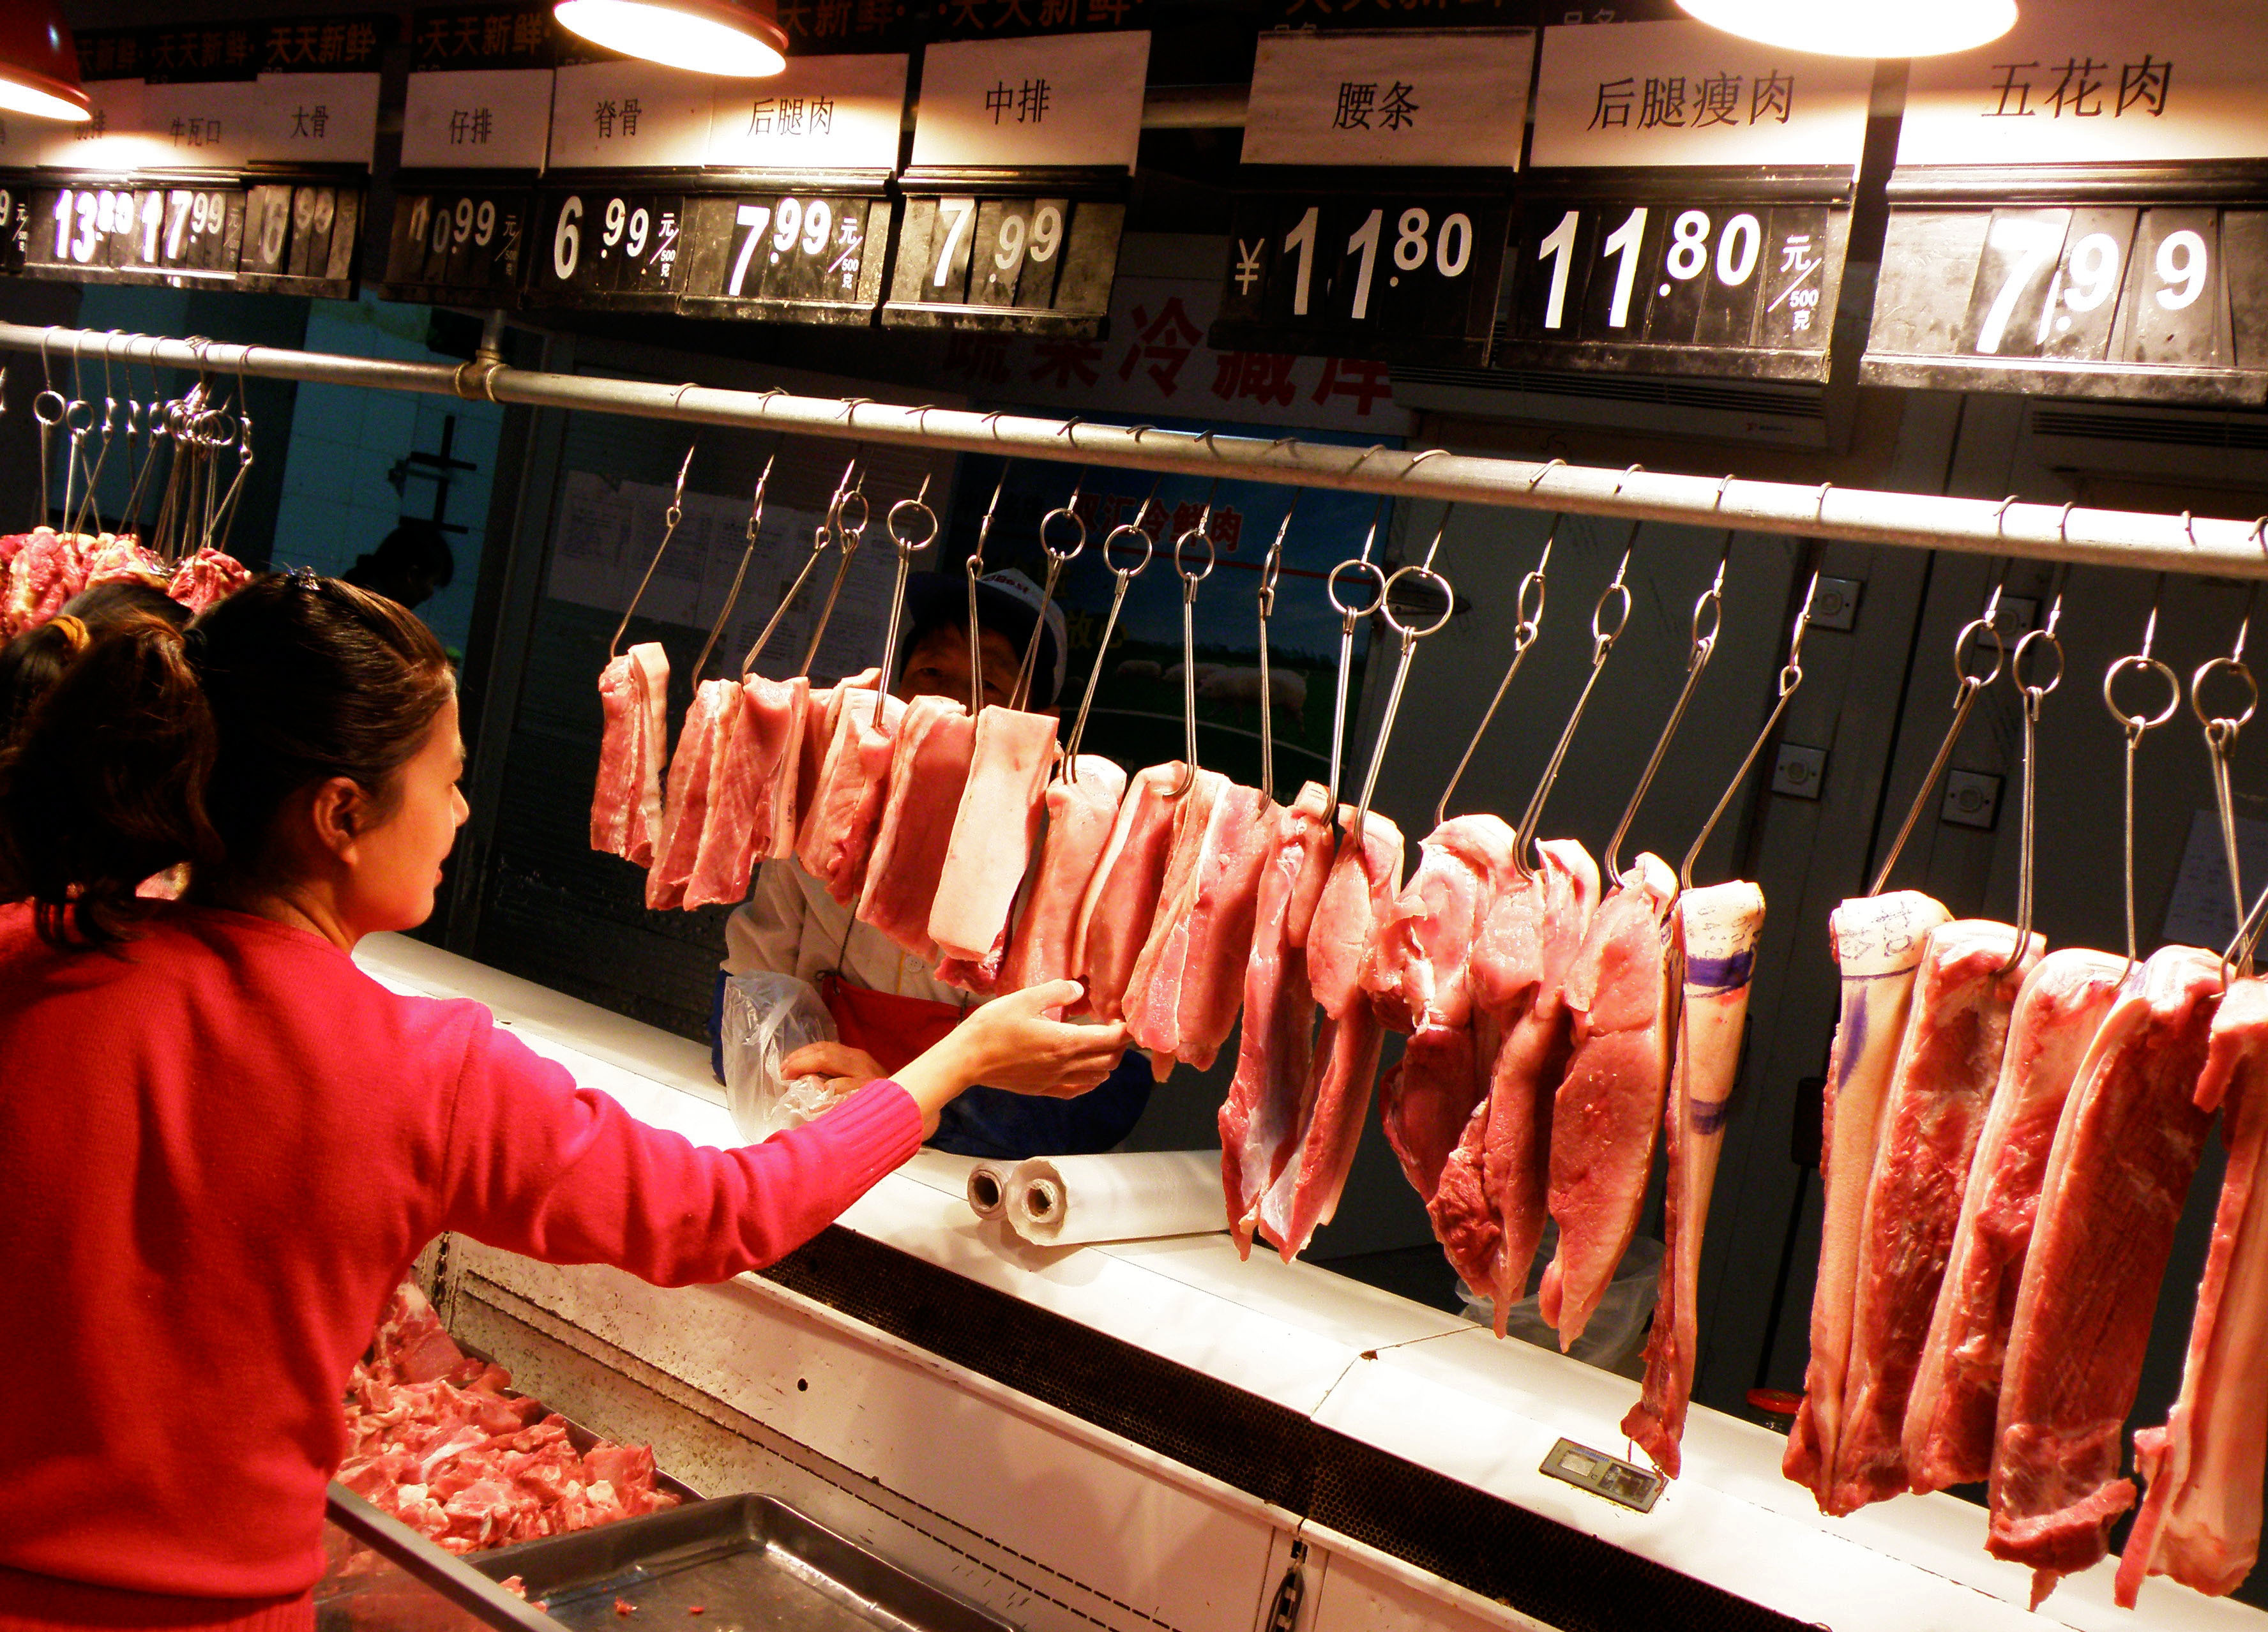 牛肉干市场充斥走私牛肉 知情人:查查老鼠肉卖给谁了